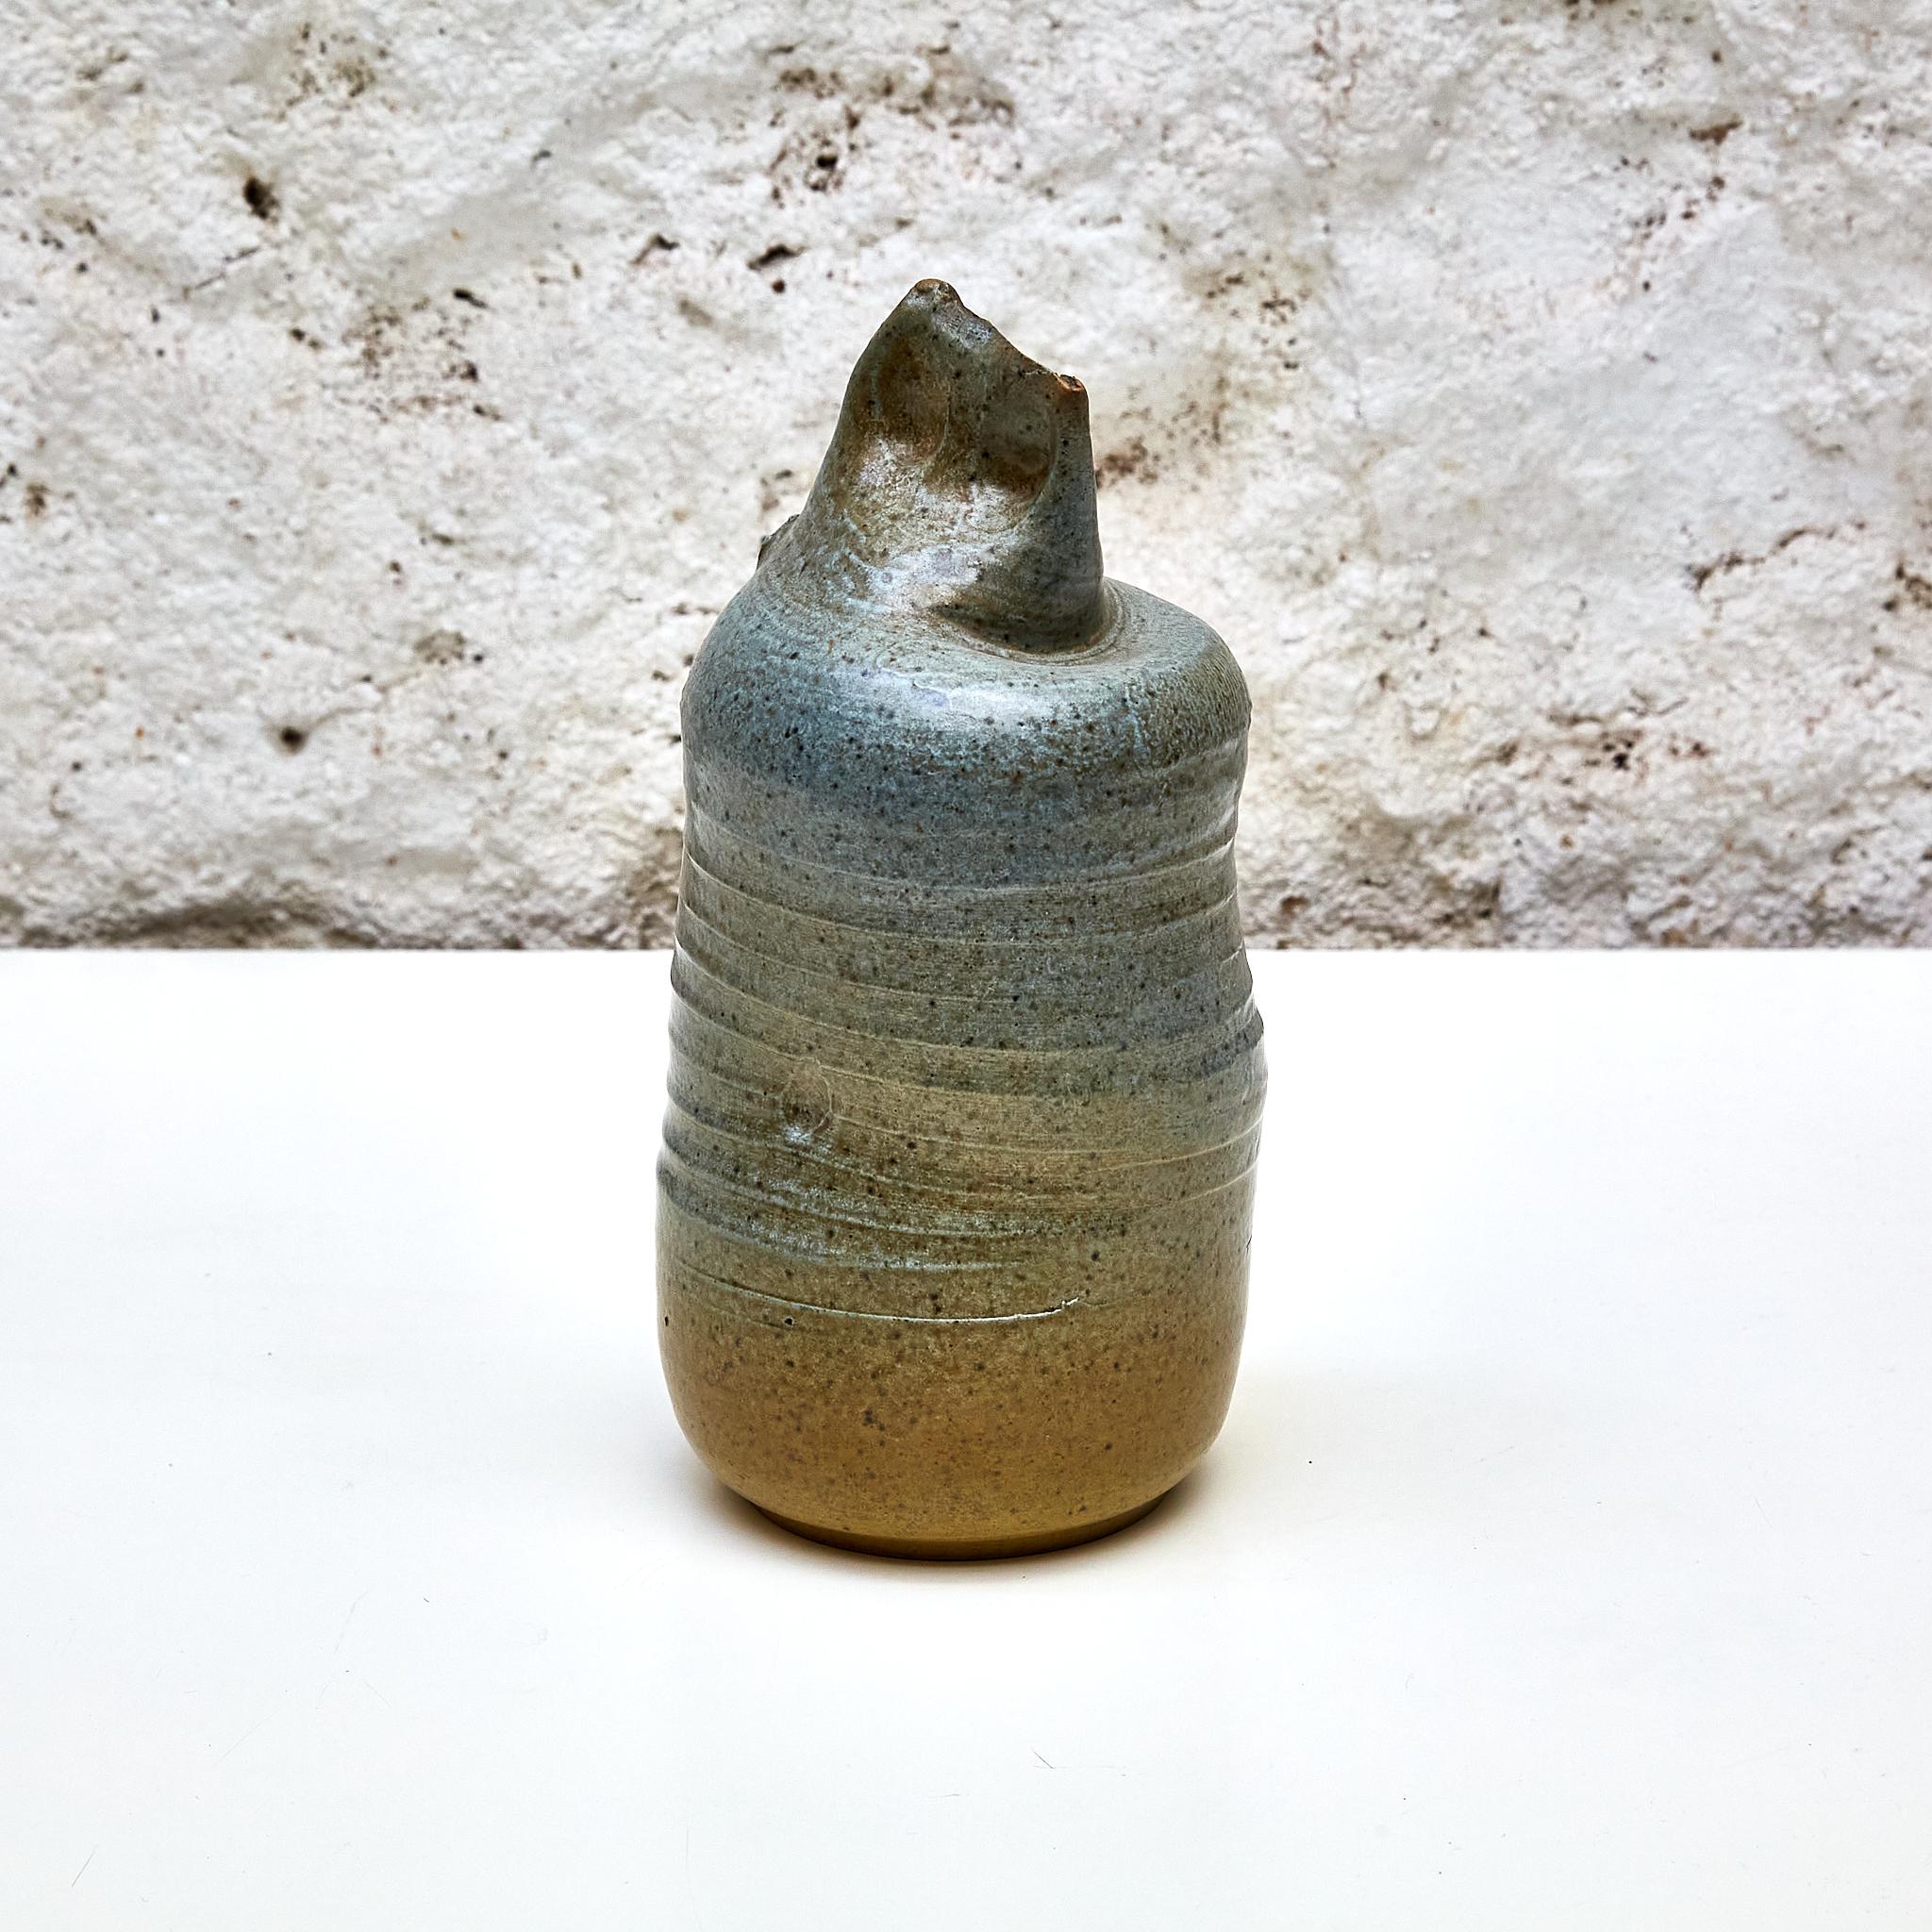 Keramische Skulptur Vase von Francisco Fernandez Navarro, einem Schüler der Massana-Schule.

Hergestellt in Spanien, ca. 1970.

In ursprünglichem Zustand mit geringen Gebrauchsspuren, die dem Alter und dem Gebrauch entsprechen, wobei eine schöne